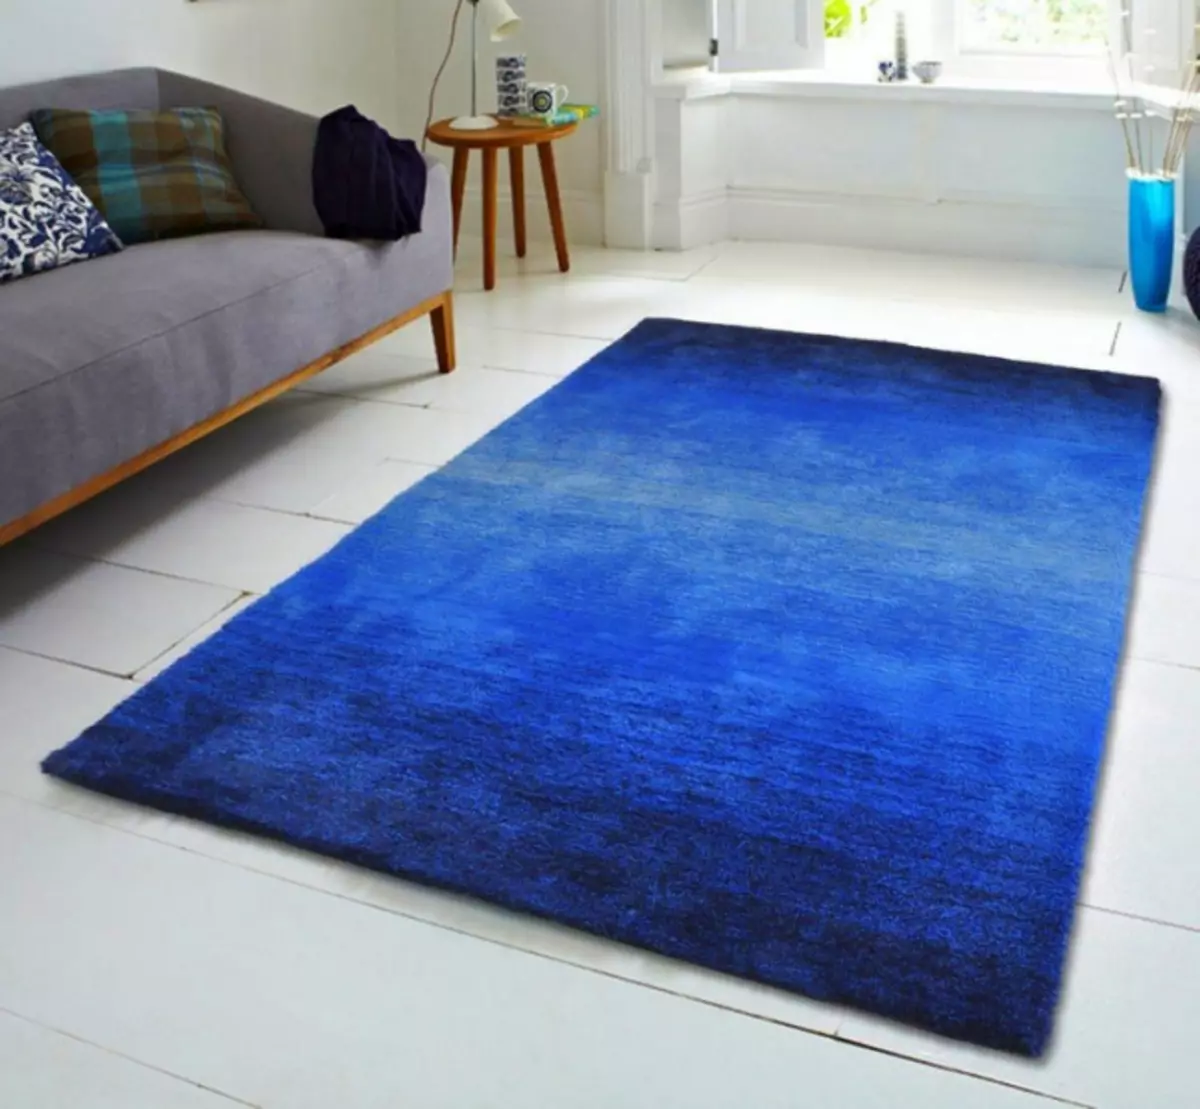 Lys teppe i interiøret: Hvor lett og lett å ta med maling i leiligheten din (37 bilder)